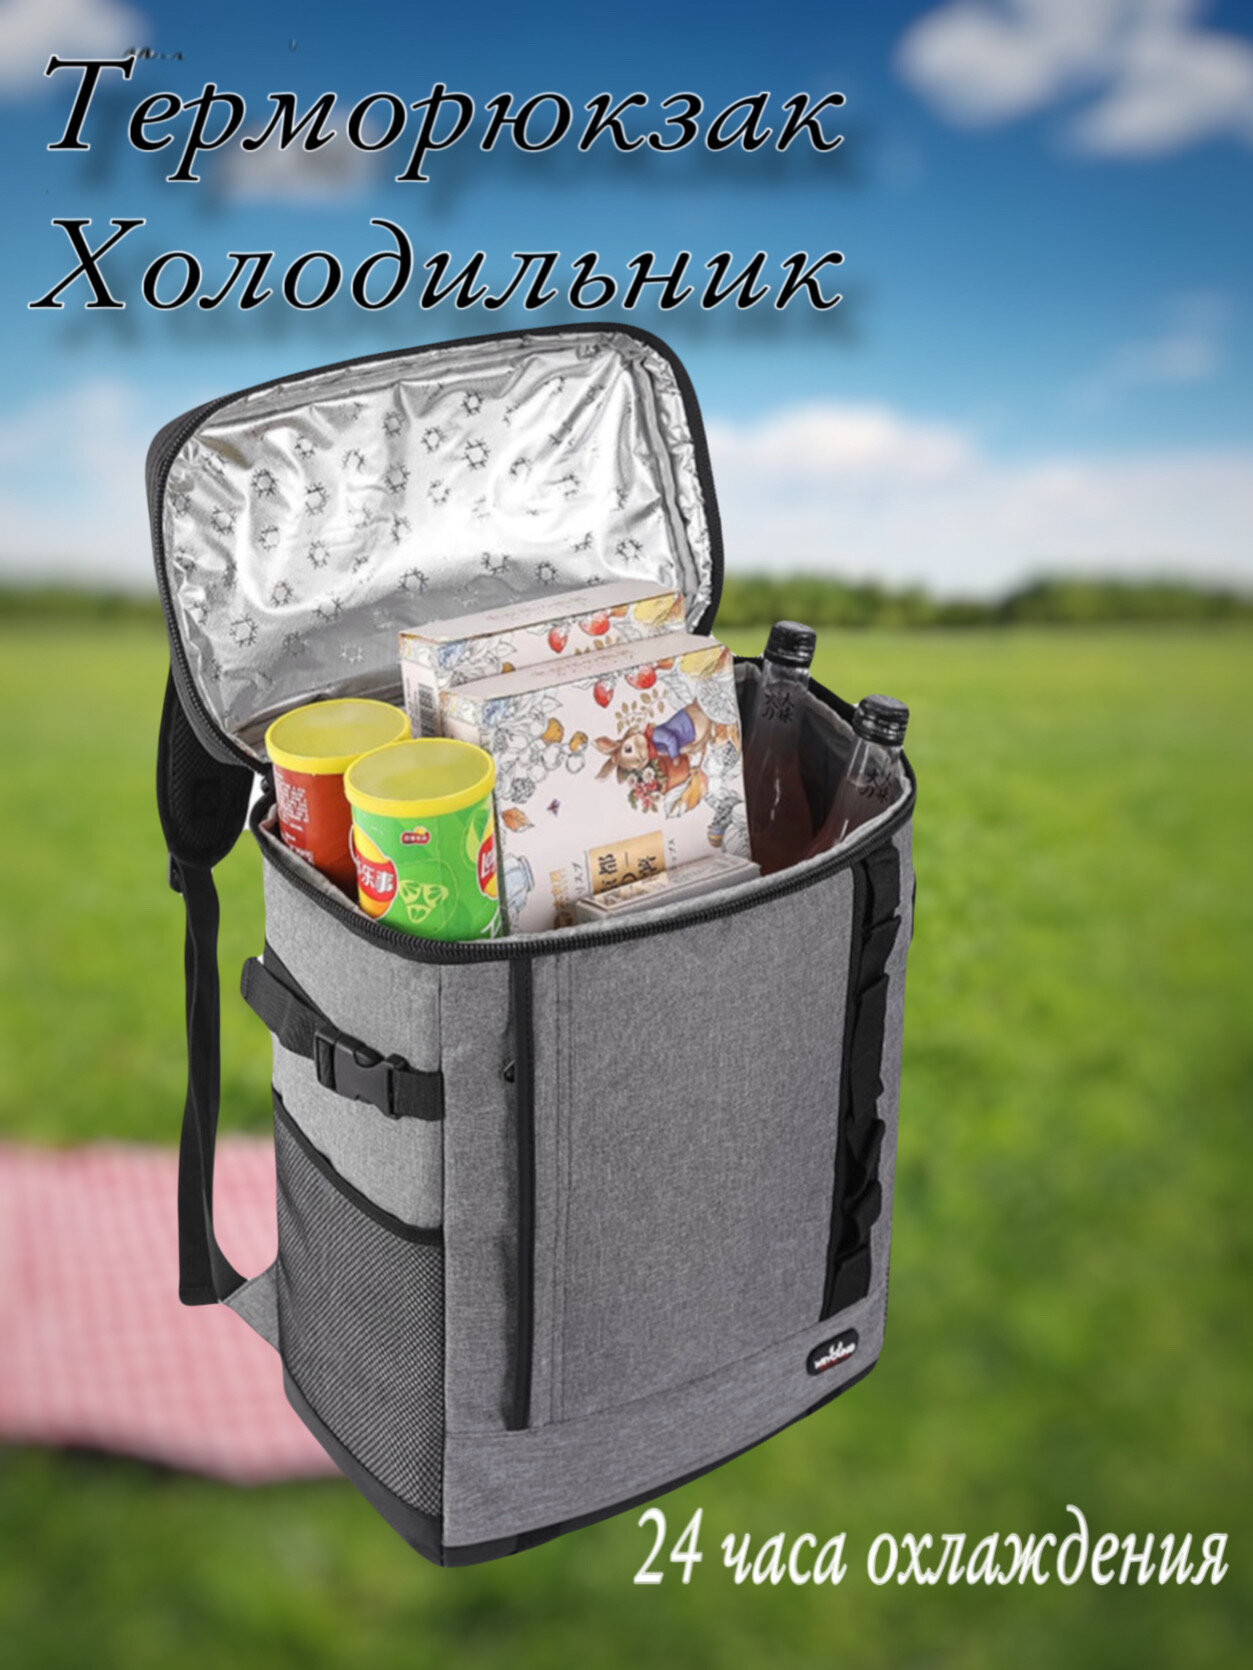 Рюкзак холодильник сумка/Терморюкзак холодильник / термо сумка холодильник/ вместительный рюкзак термо/ термосумка холодильник большая/ сумка терморюкзак холодильник/ сумка холодильник для продуктов